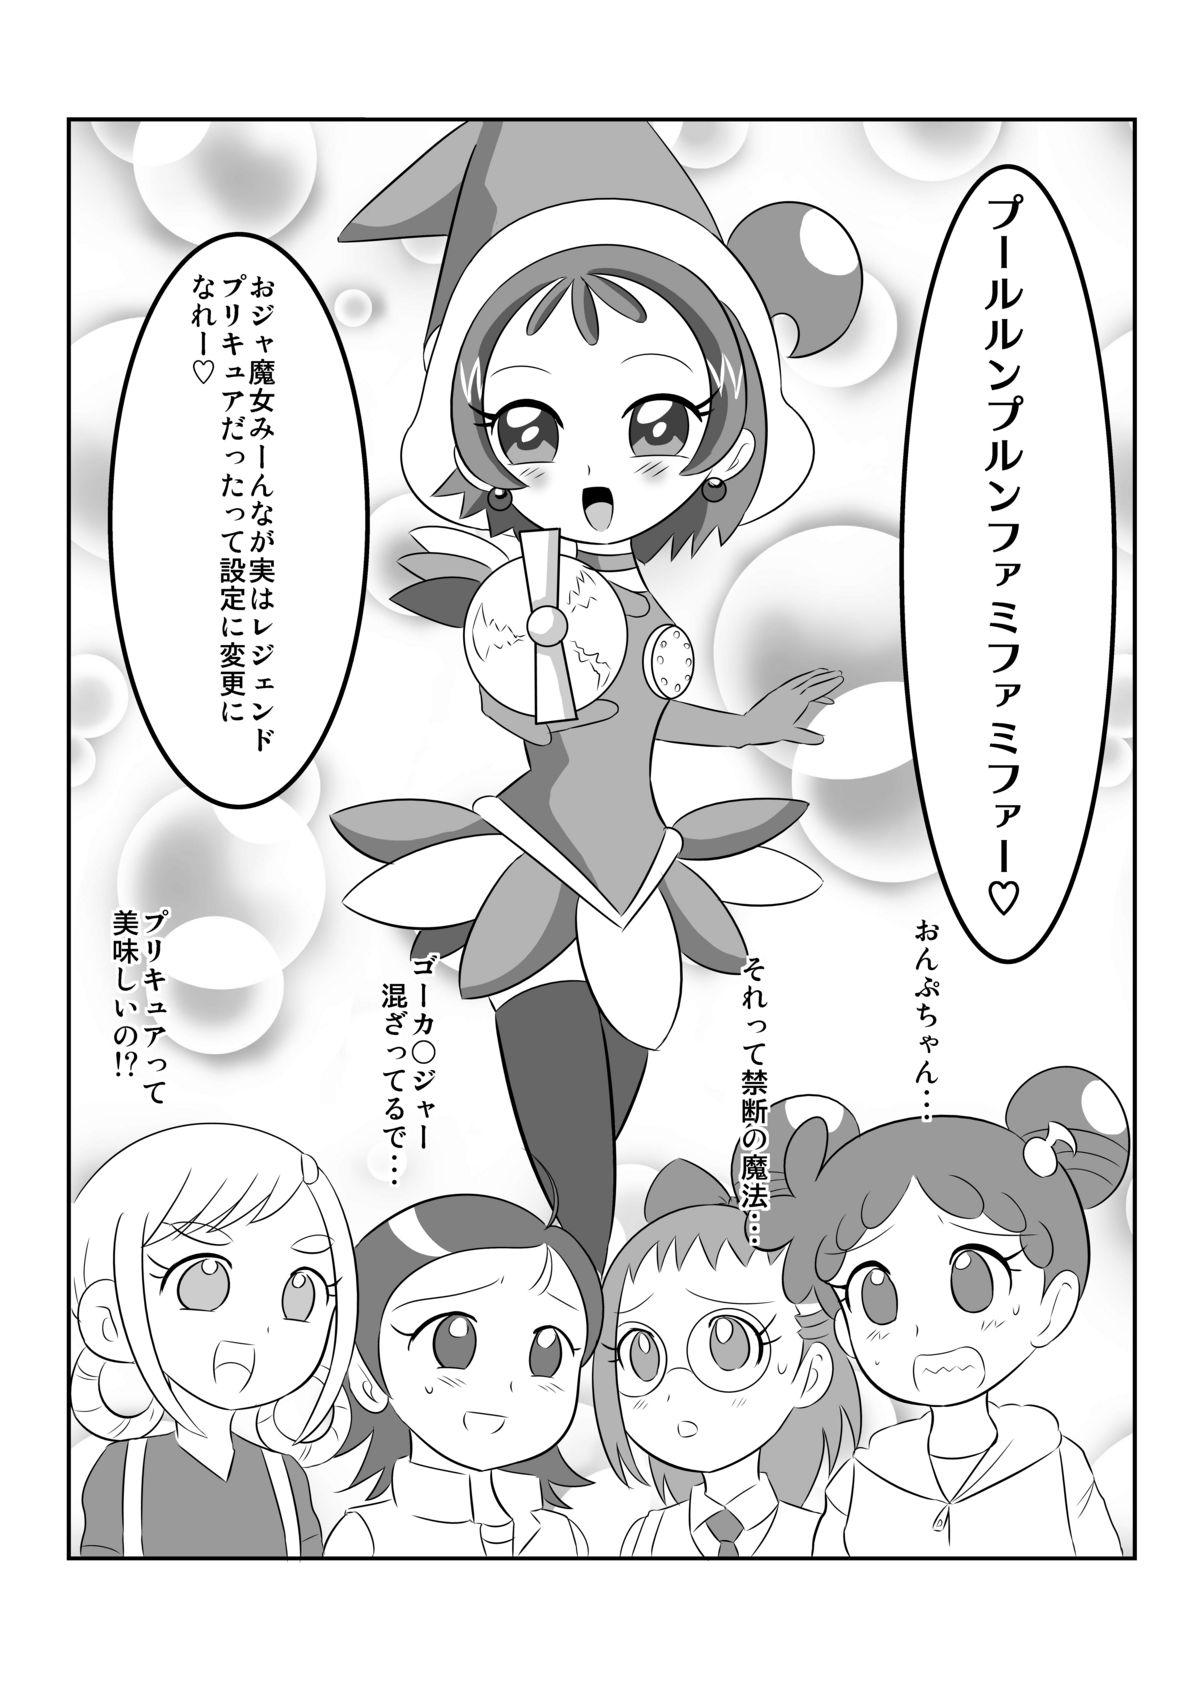 Parody 地獄魔法少女 - Ojamajo doremi Free Blowjobs - Page 2